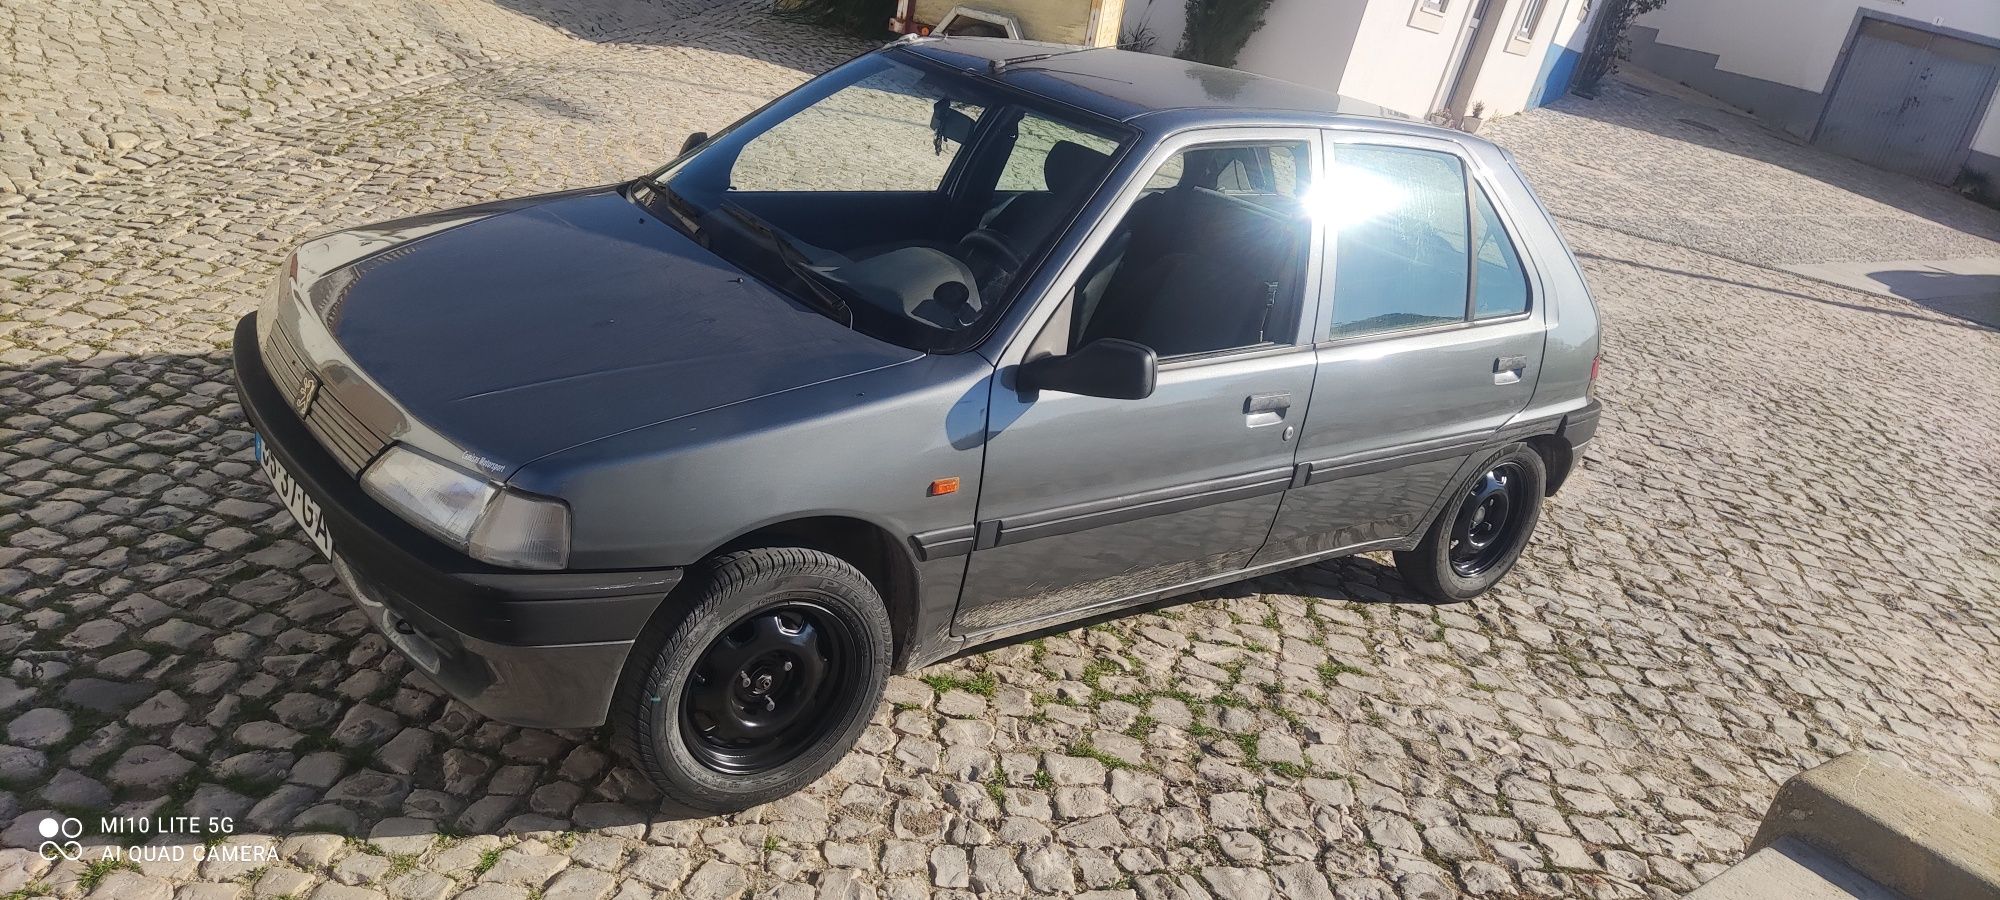 Peugeot 106 xr 1995